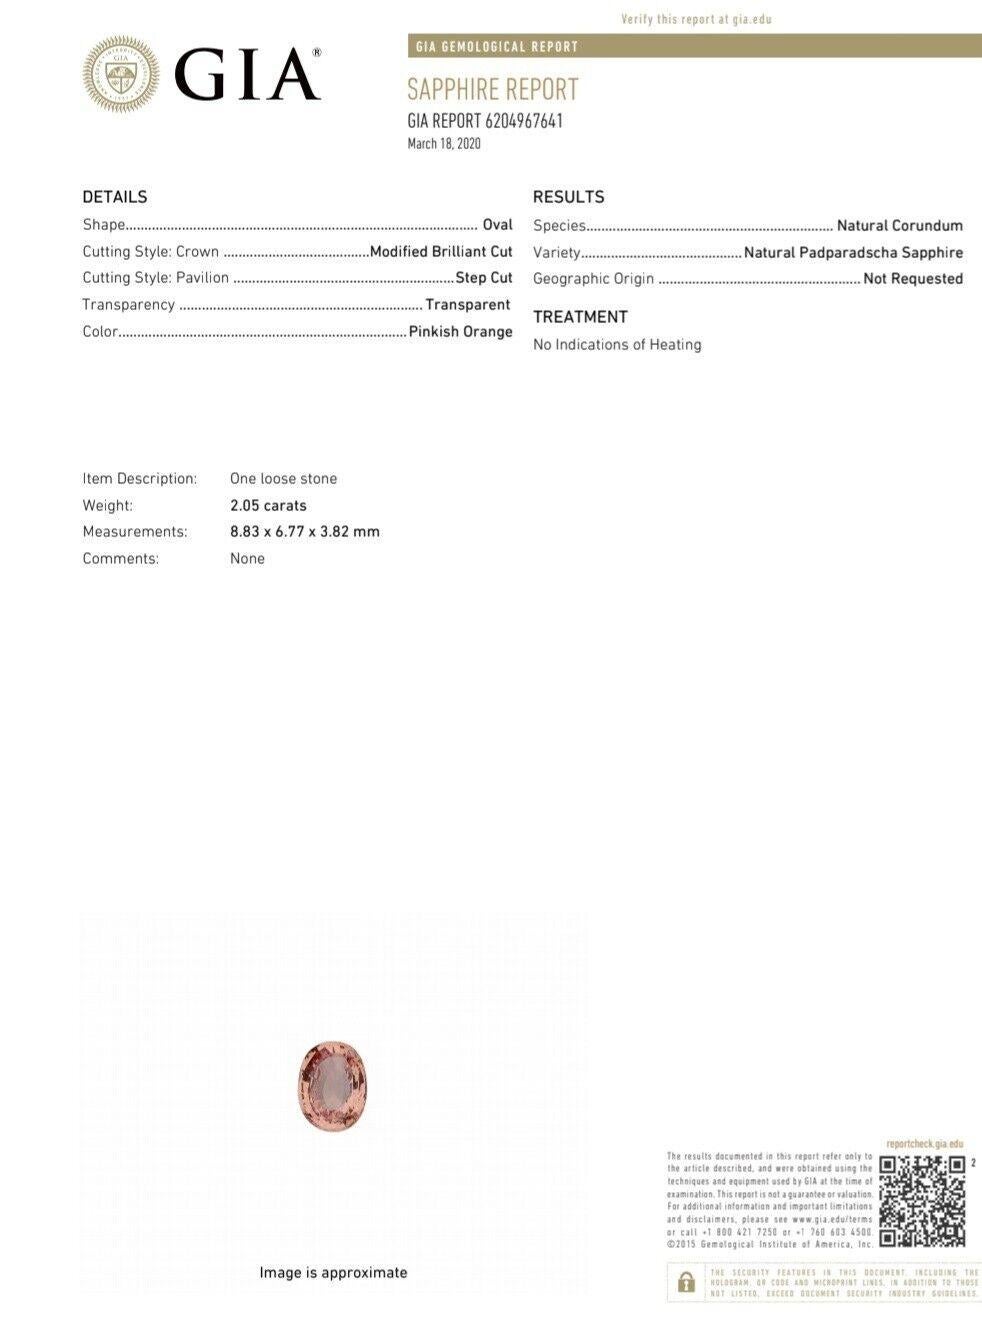 Cluster Halo Classique Certifié GIA 2.05ct. Bague en saphir rose naturel Padparascha. Rapport : 6204967641 Taille ovale : 8,82 x 6,77 x 3,82mm Pureté (VS), Transparent Couleur orange rosé 1,10ct. Côté diamants ronds naturels de couleur G, pureté